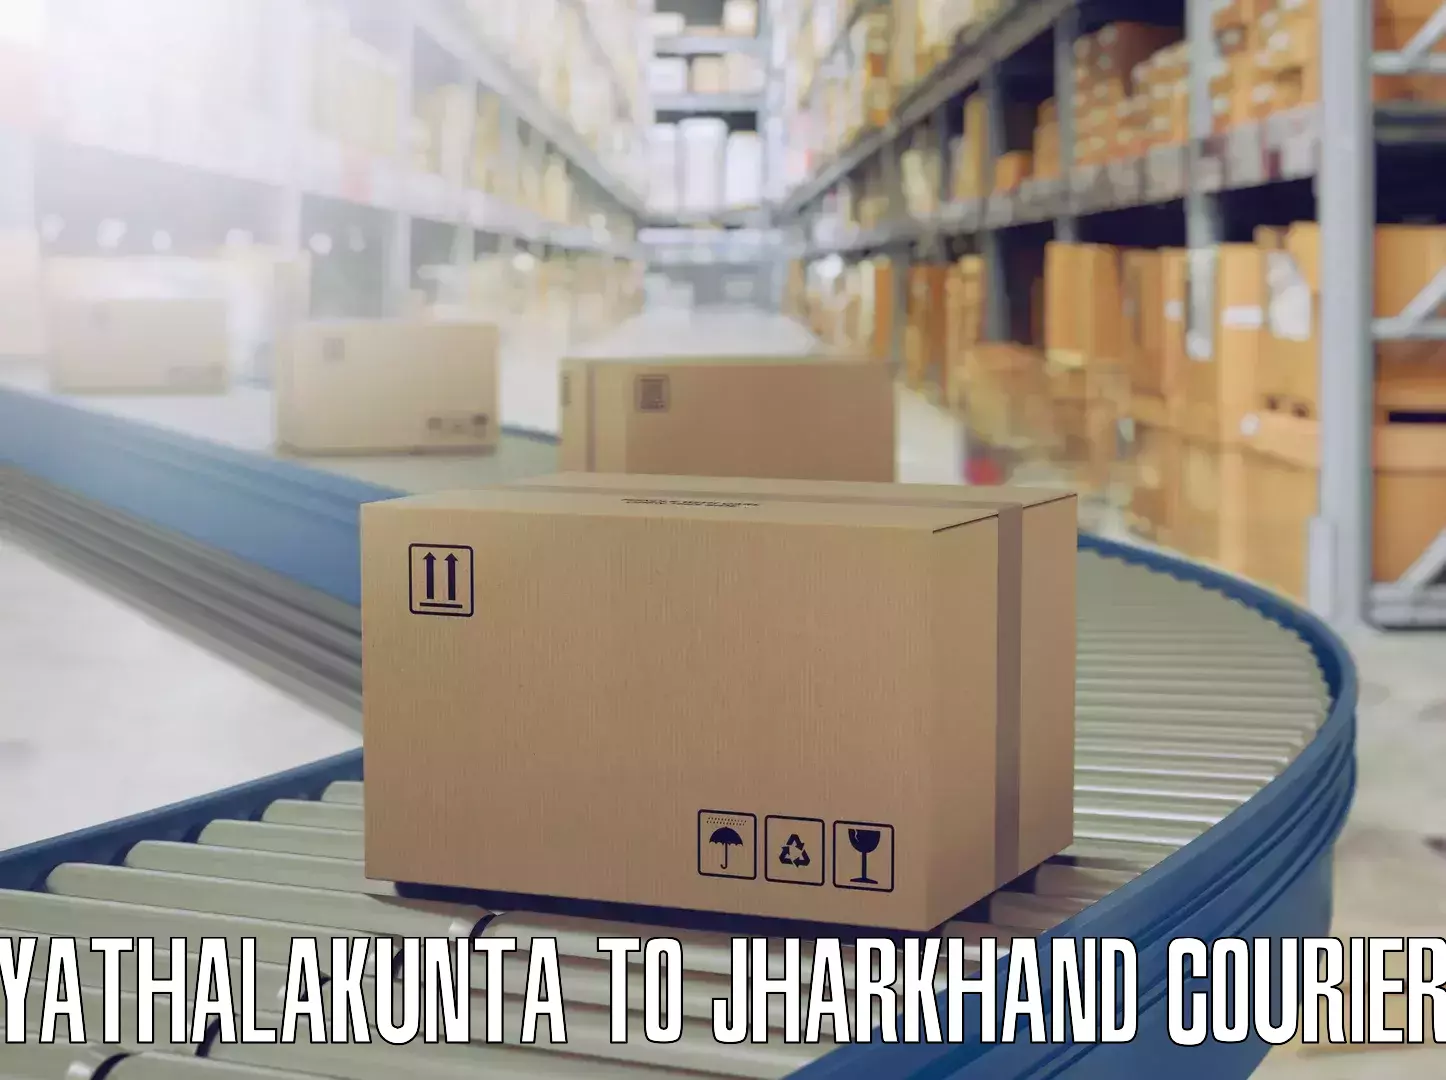 Efficient moving company Yathalakunta to Lohardaga